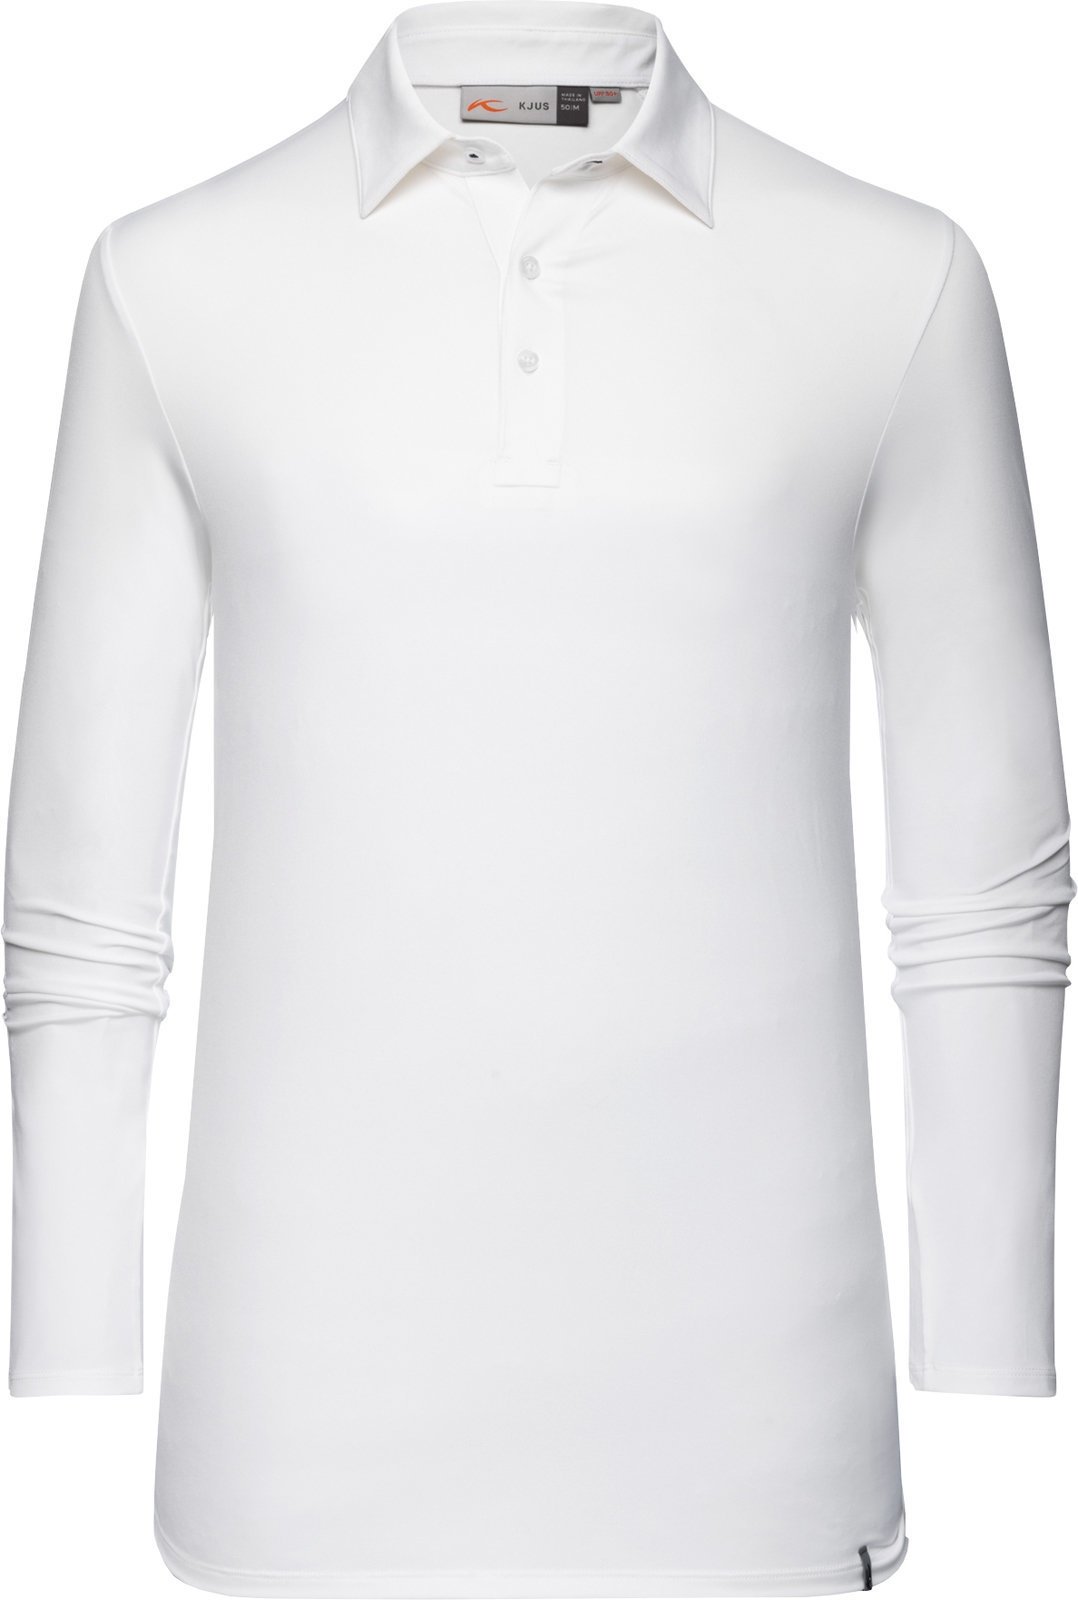 Polo košile Kjus Soren Solid Bílá 48